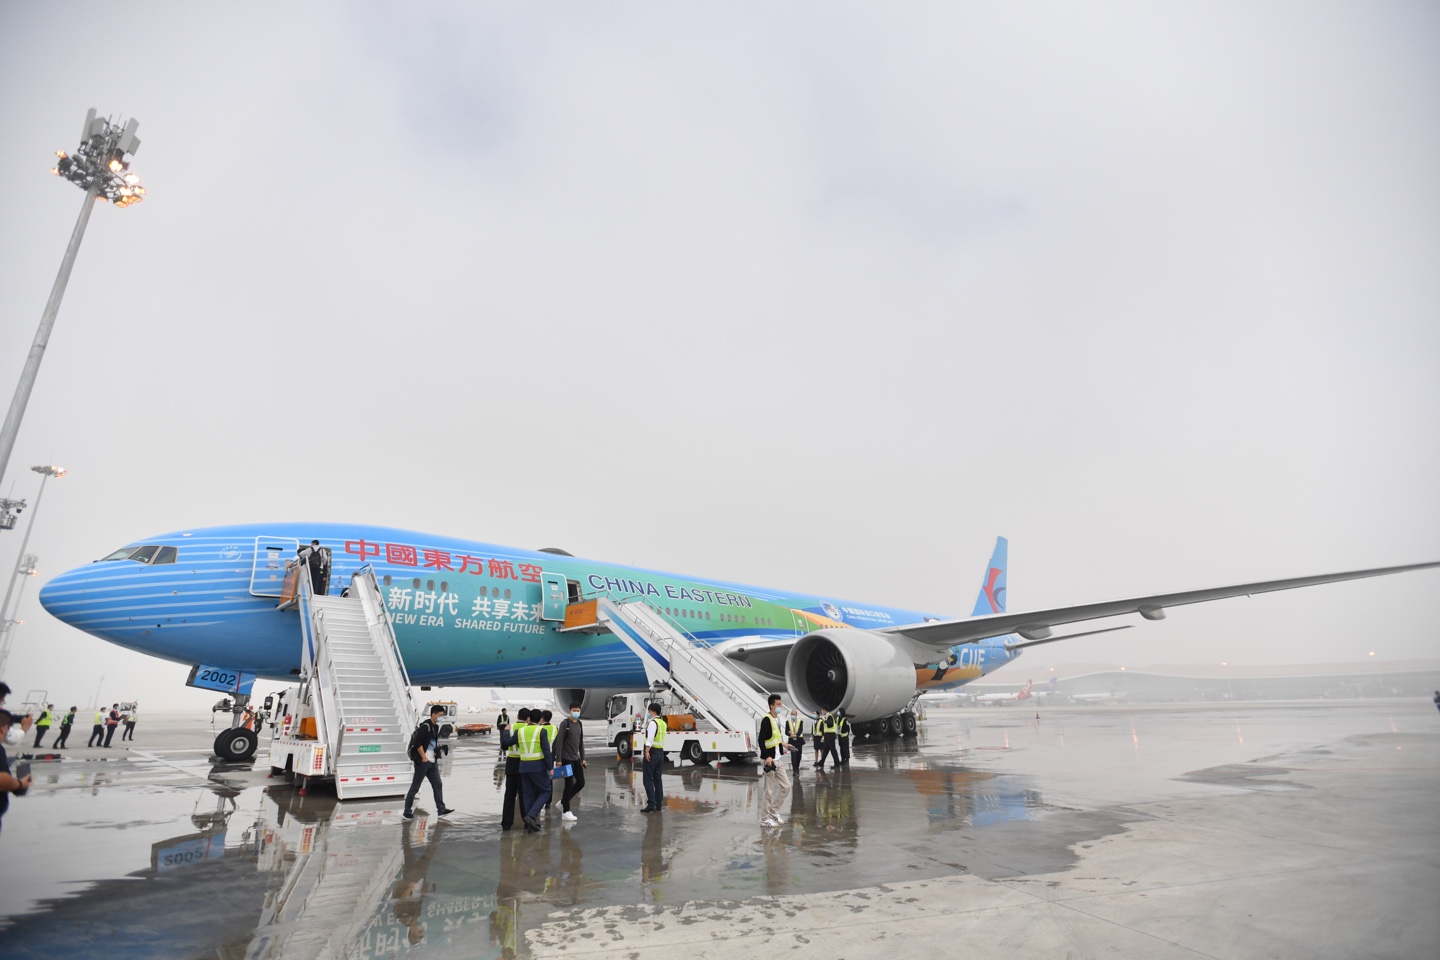 大兴机场今天满一周岁 东航全球首架“进博号”从上海飞去“庆生”发布“大兴随心飞